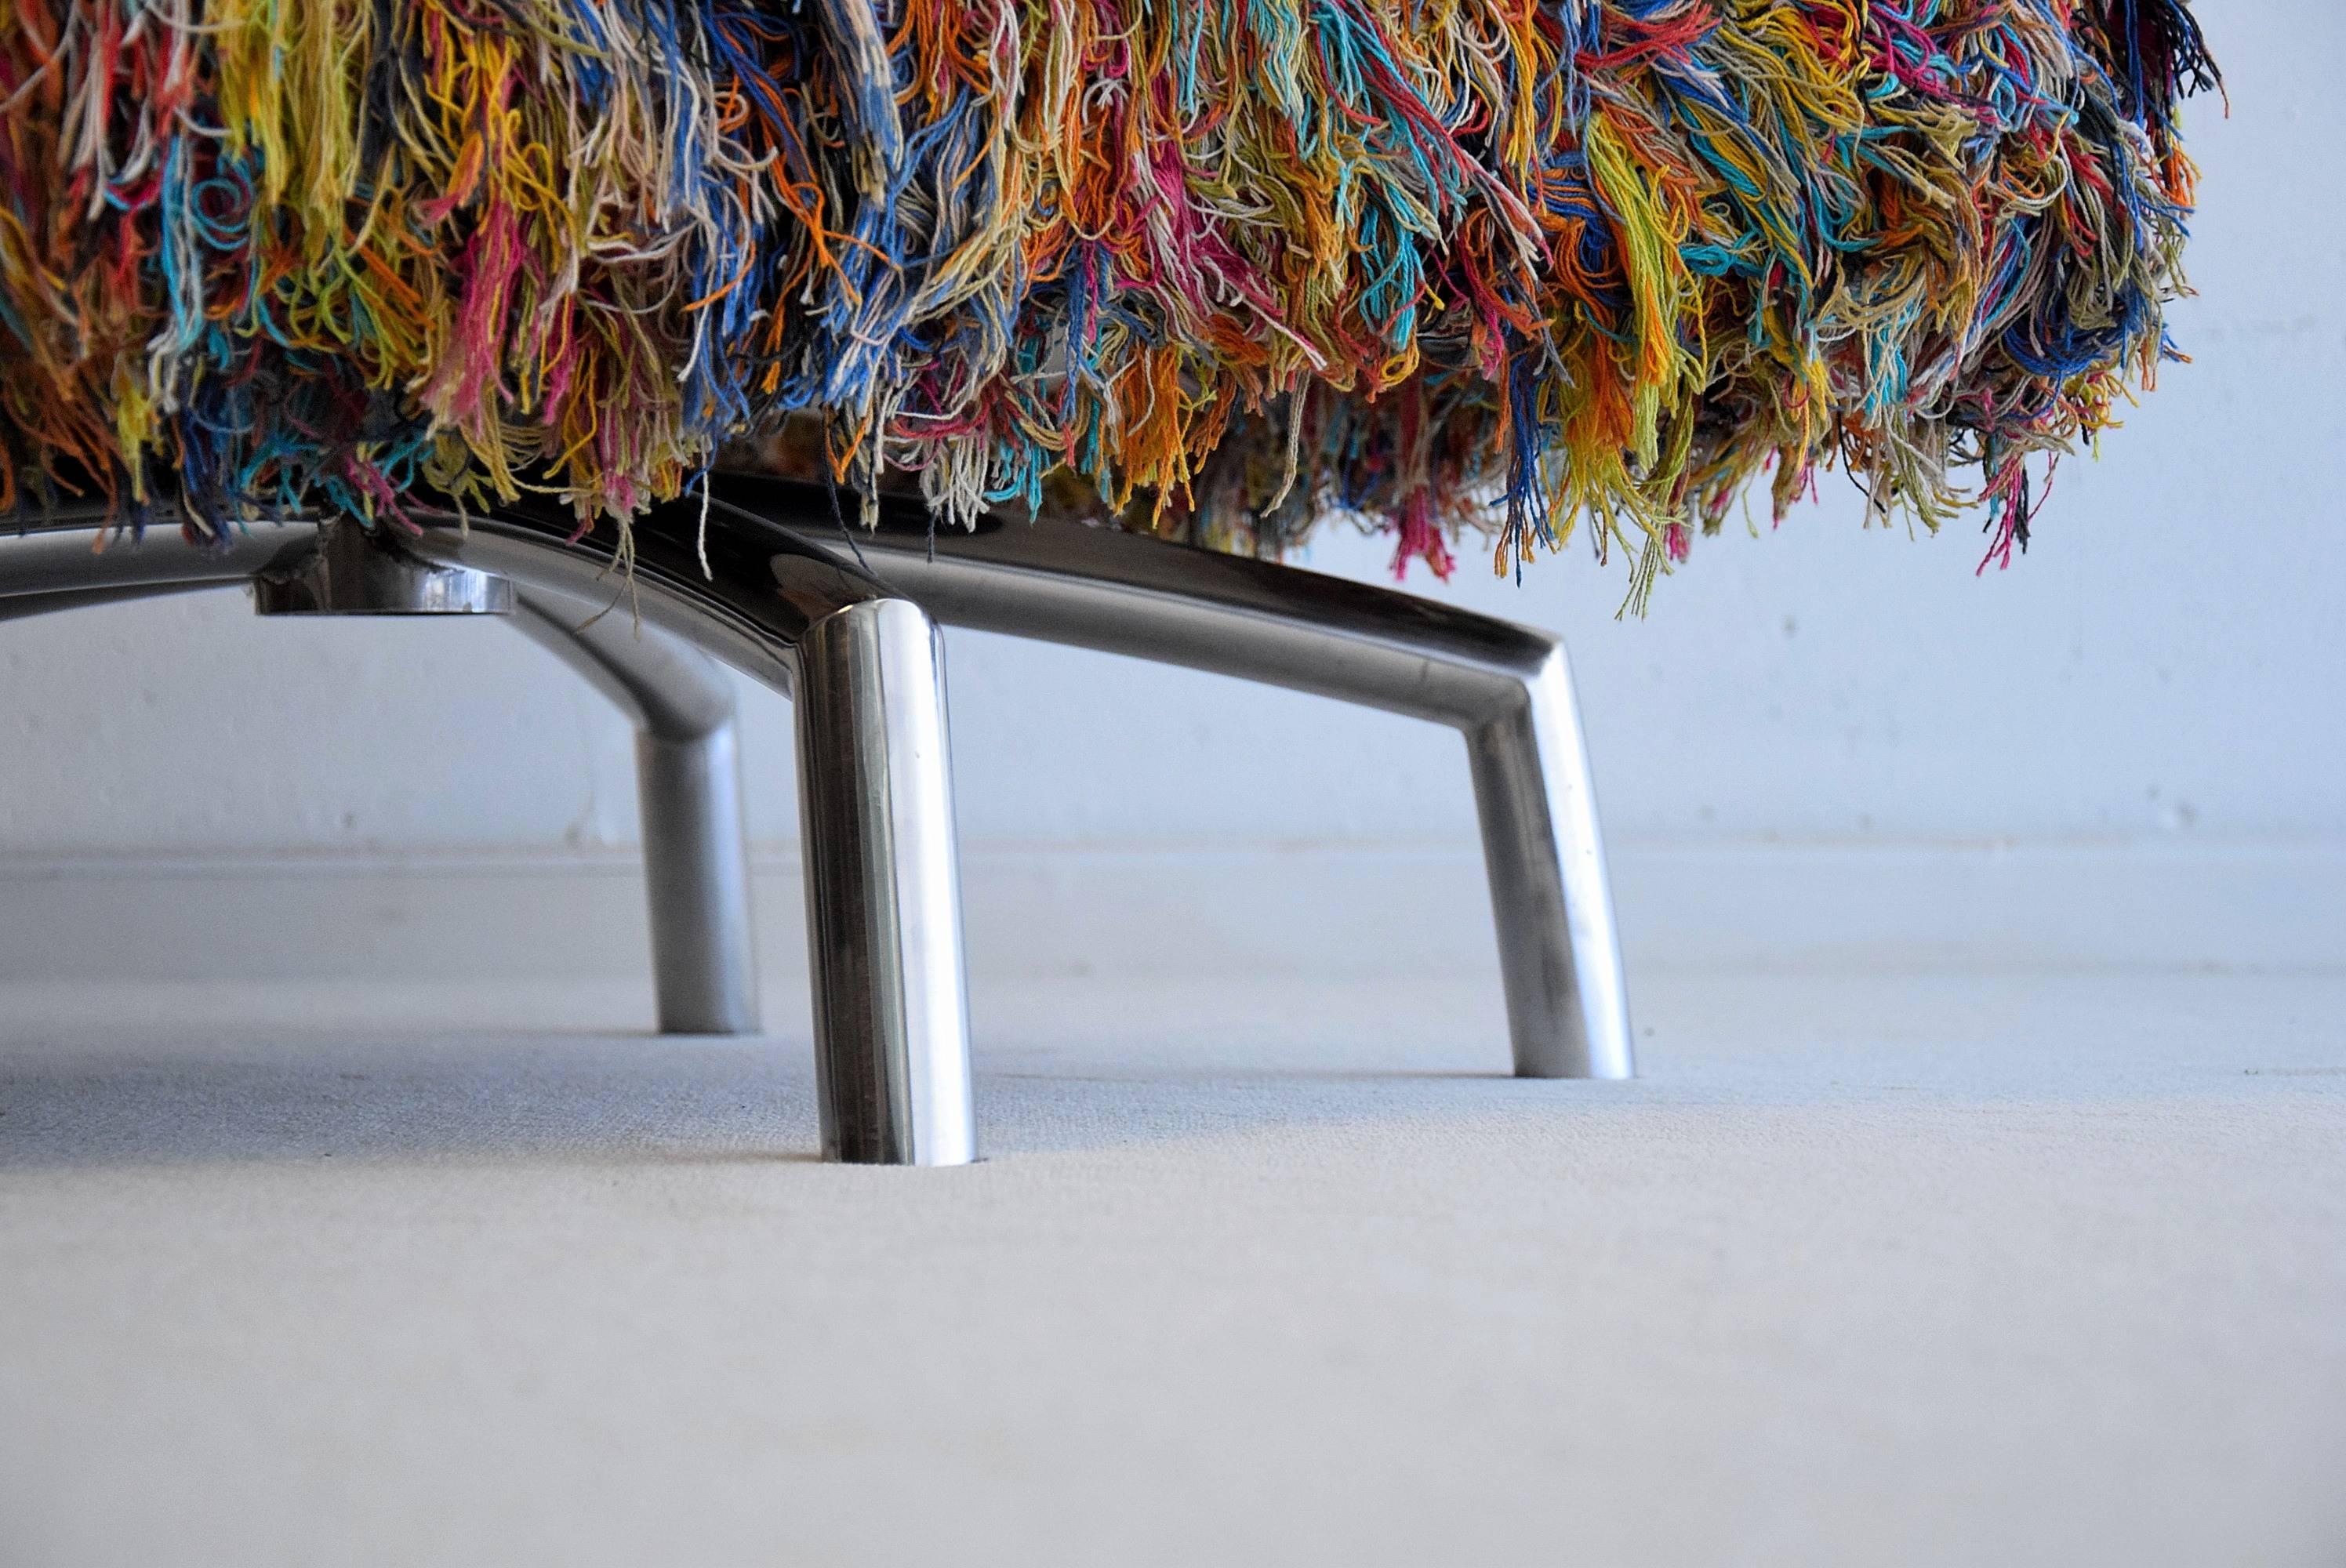 Fauteuil pivotant Giramundo.
Conçu par Thomas Bina de Environment Furniture of Los Angeles, vers 2007.

Il est fabriqué à partir de fil de coton multicolore brésilien recyclé et pivote sur des pieds en acier inoxydable poli.

Dimensions : H 66 x L